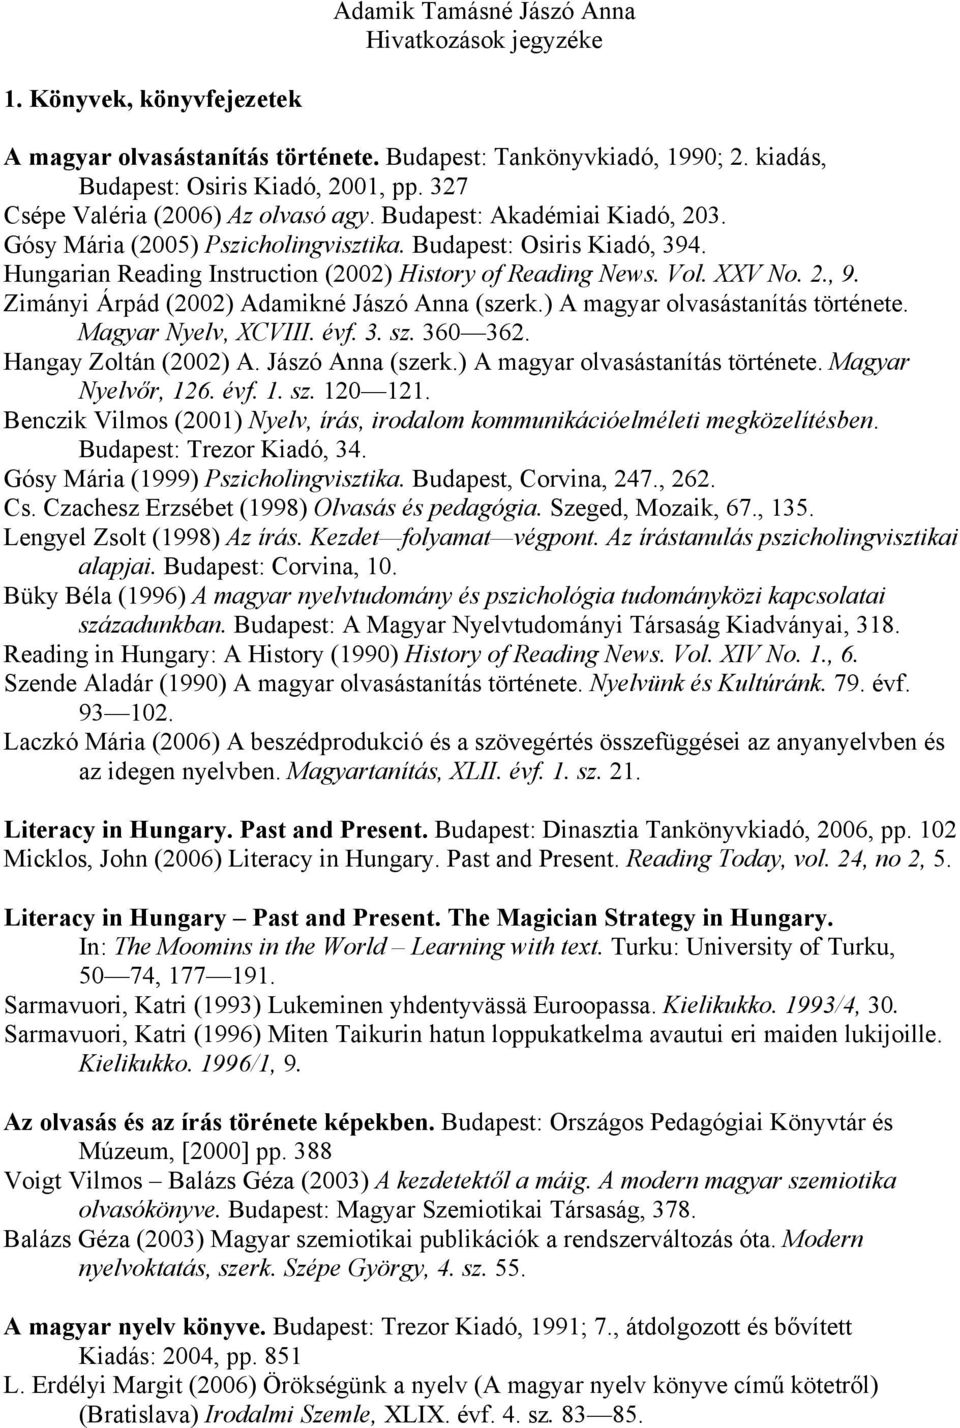 Hungarian Reading Instruction (2002) History of Reading News. Vol. XXV No. 2., 9. Zimányi Árpád (2002) Adamikné Jászó Anna (szerk.) A magyar olvasástanítás története. Magyar Nyelv, XCVIII. évf. 3. sz.